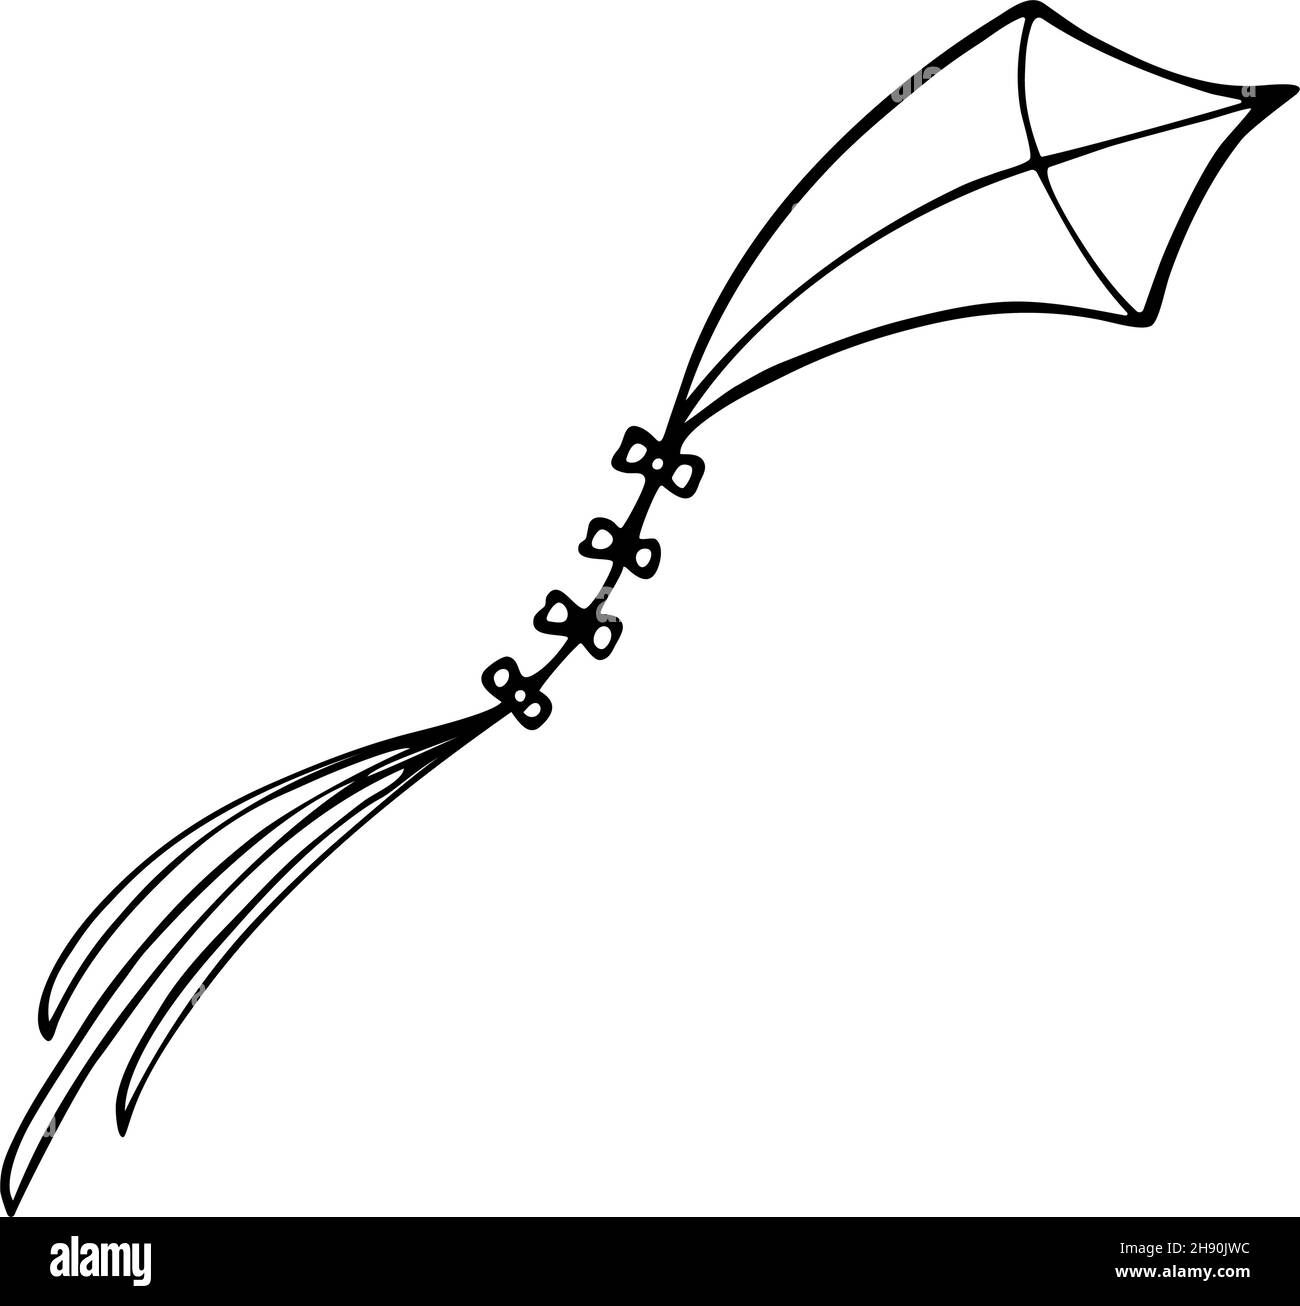 Icône de contour kite doodle dessinée à la main.Illustration vectorielle du cerf-volant pour l'impression, le Web, les mobiles et les infographies isolées sur fond blanc. Illustration de Vecteur